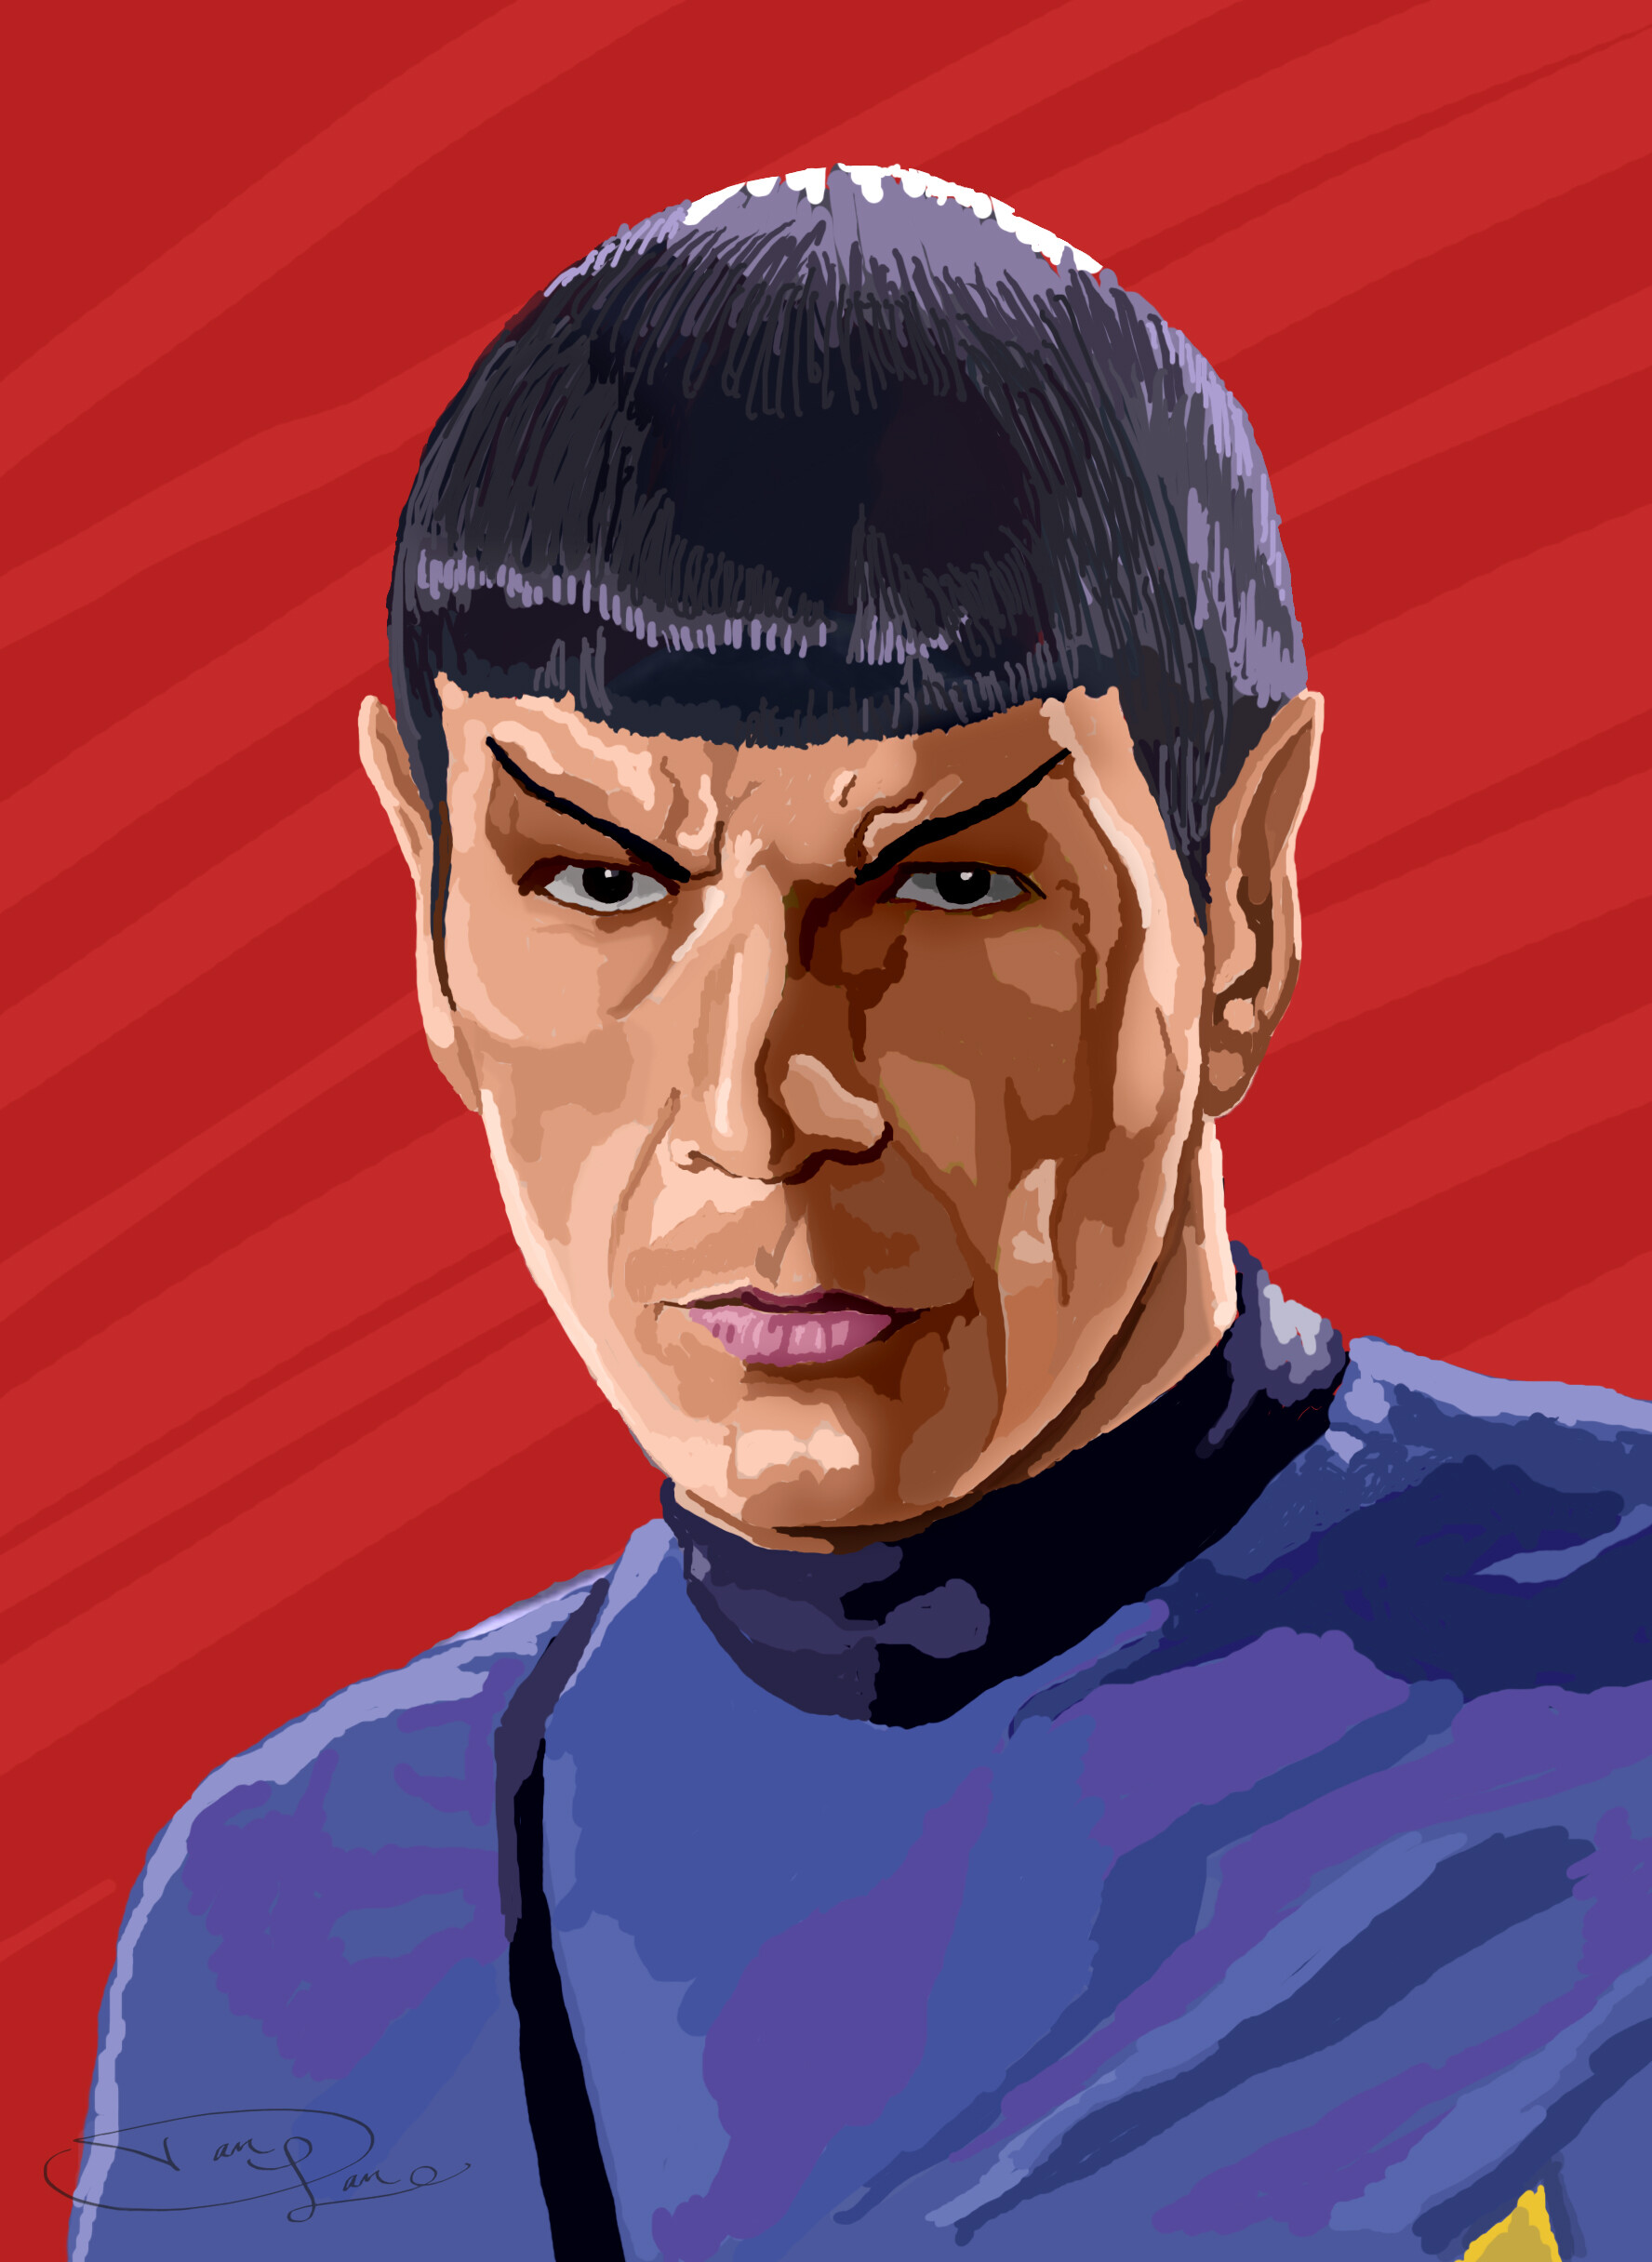 ArtStation - Mister Spock